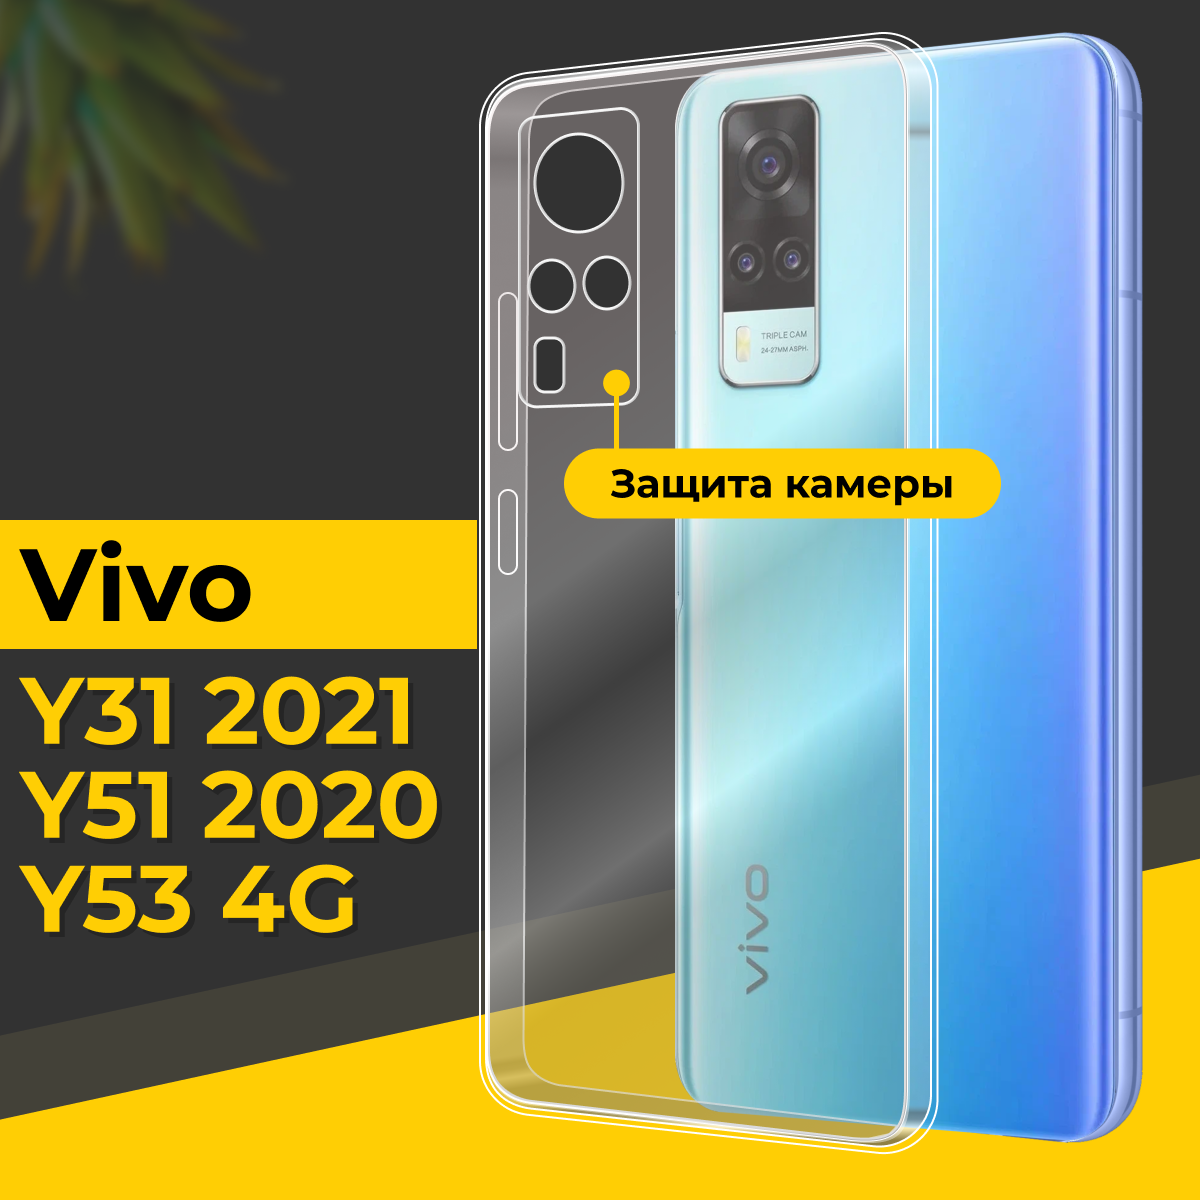 Тонкий силиконовый чехол для смартфона Vivo Y31 2021, Y51 2020 и Y53 4G / Чехол на Виво У31 2021, У51 2020 и У53 4Г с защитой камеры / Прозрачный